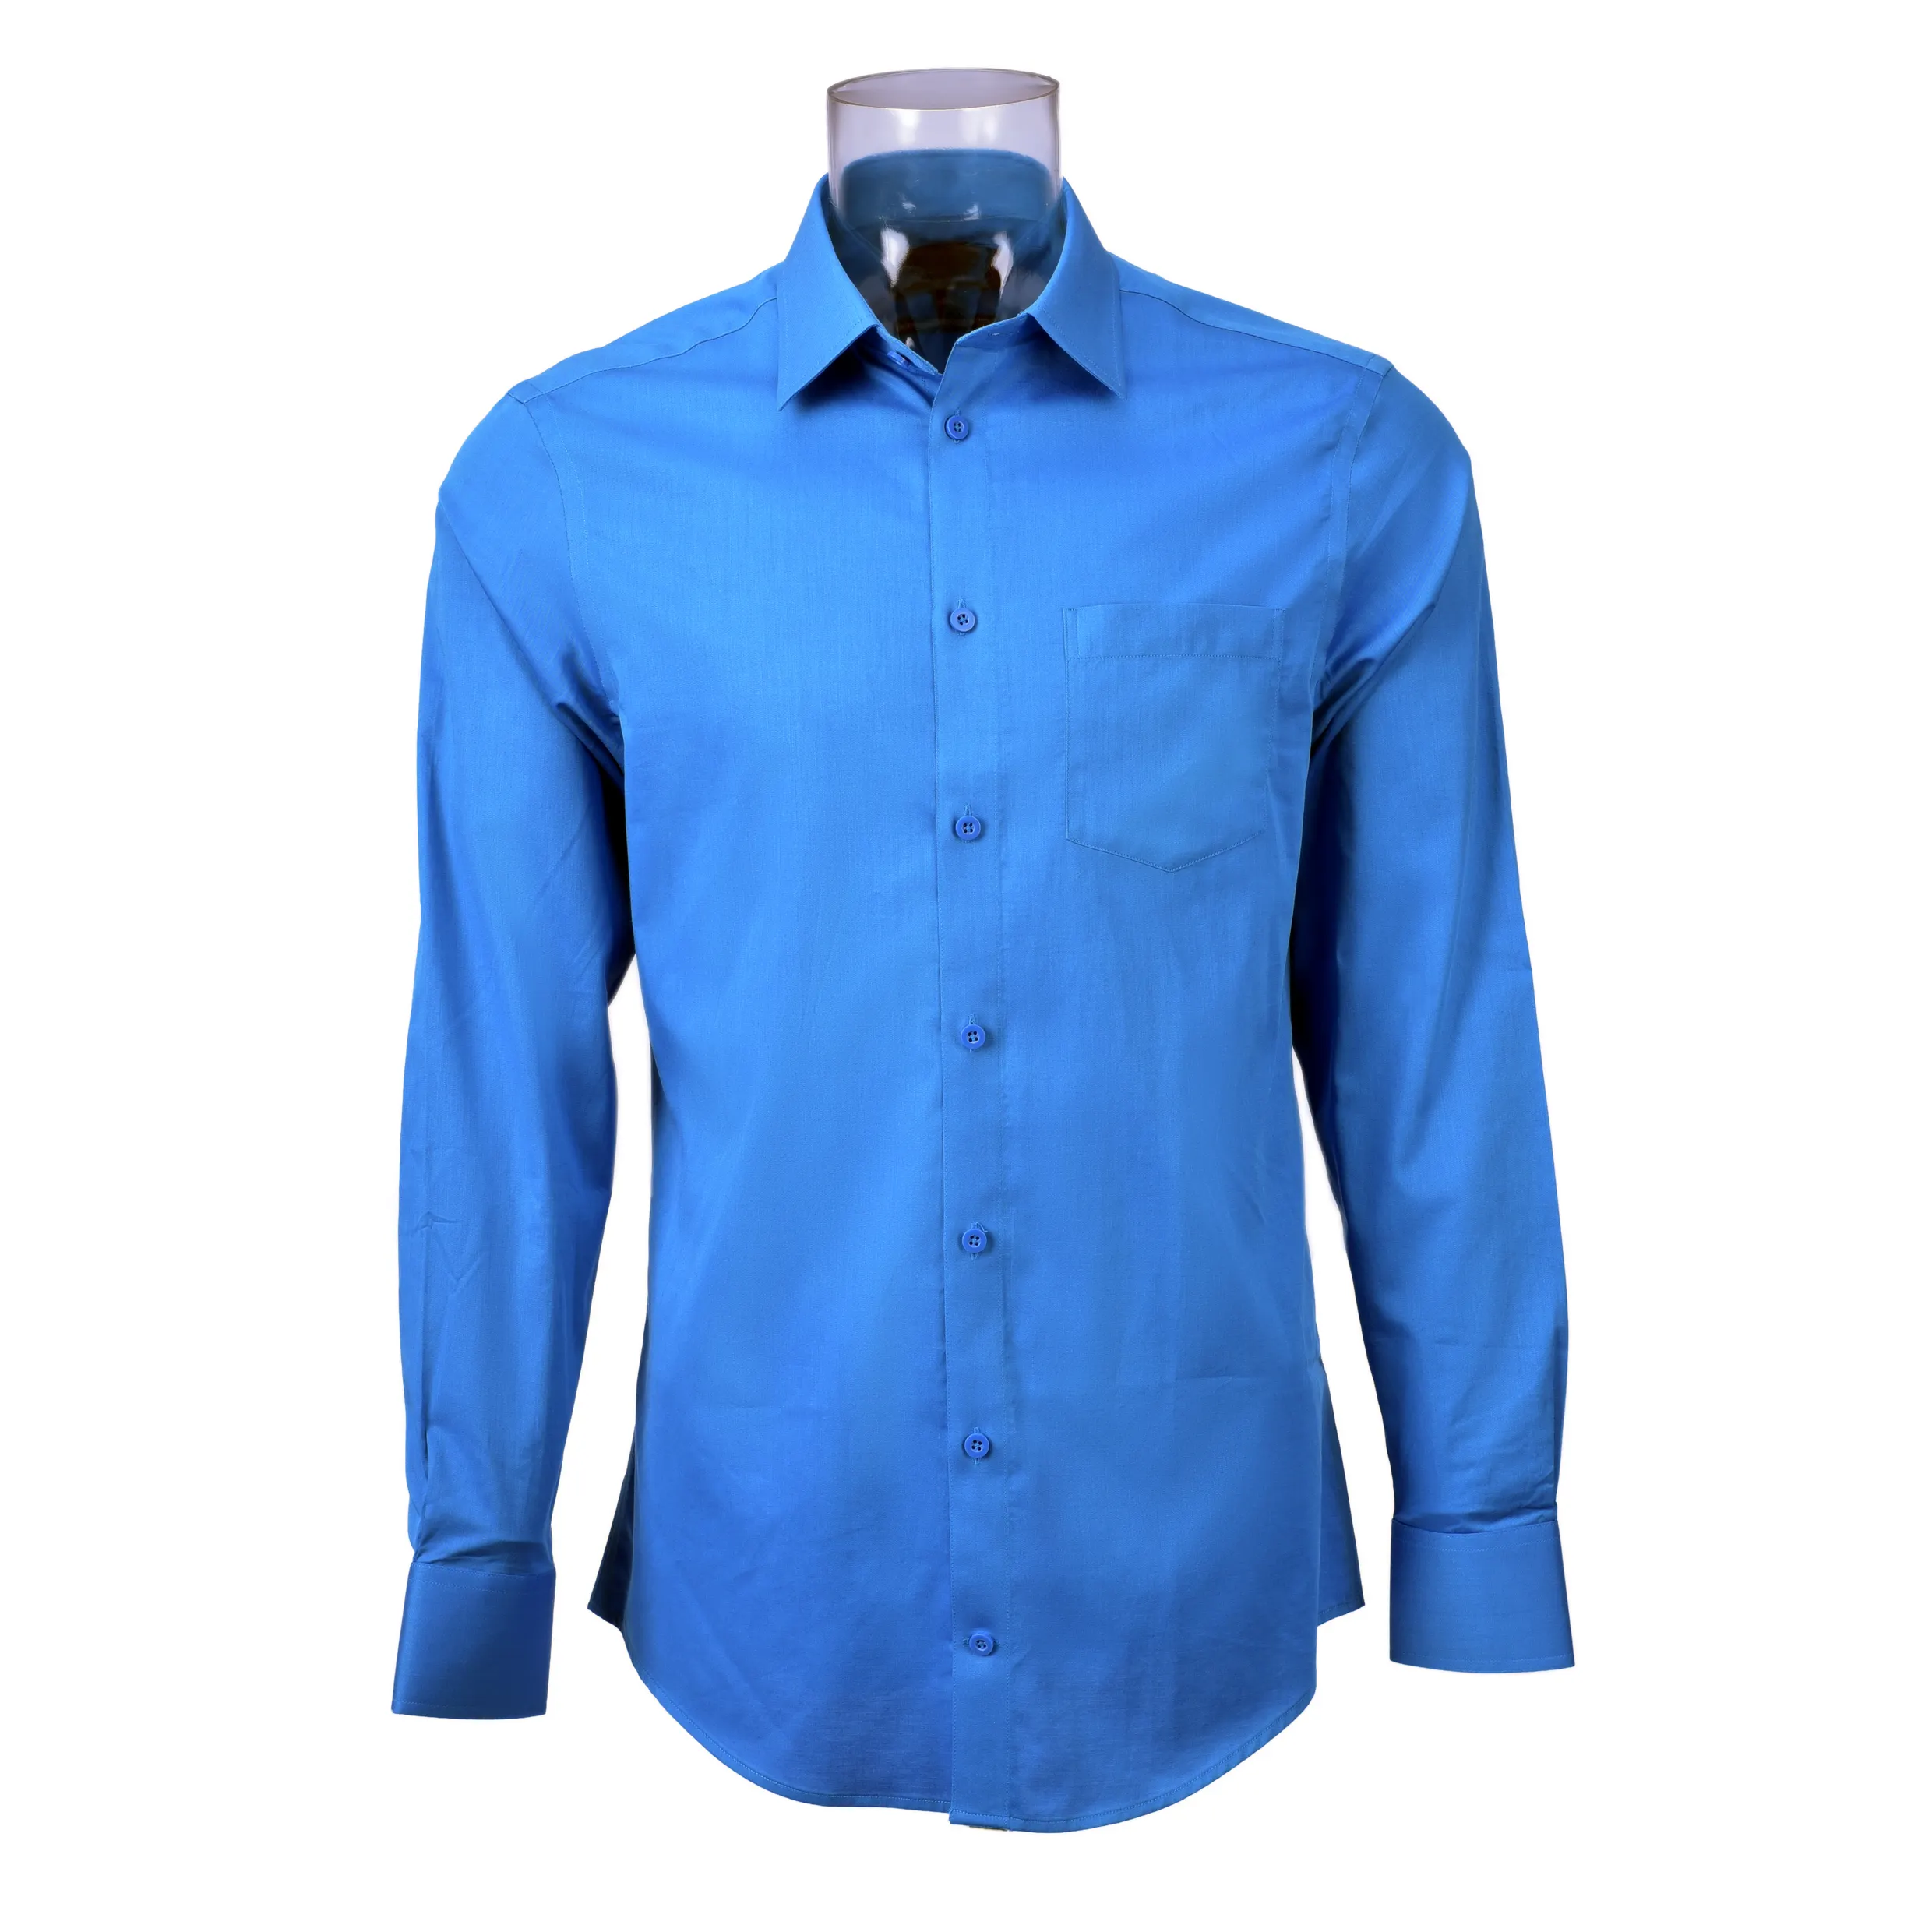 RTS 100% pamuk erkek düz dimi iş 'smokin gömlek uzun kollu DP olmayan demir elbise gömlek erkekler için